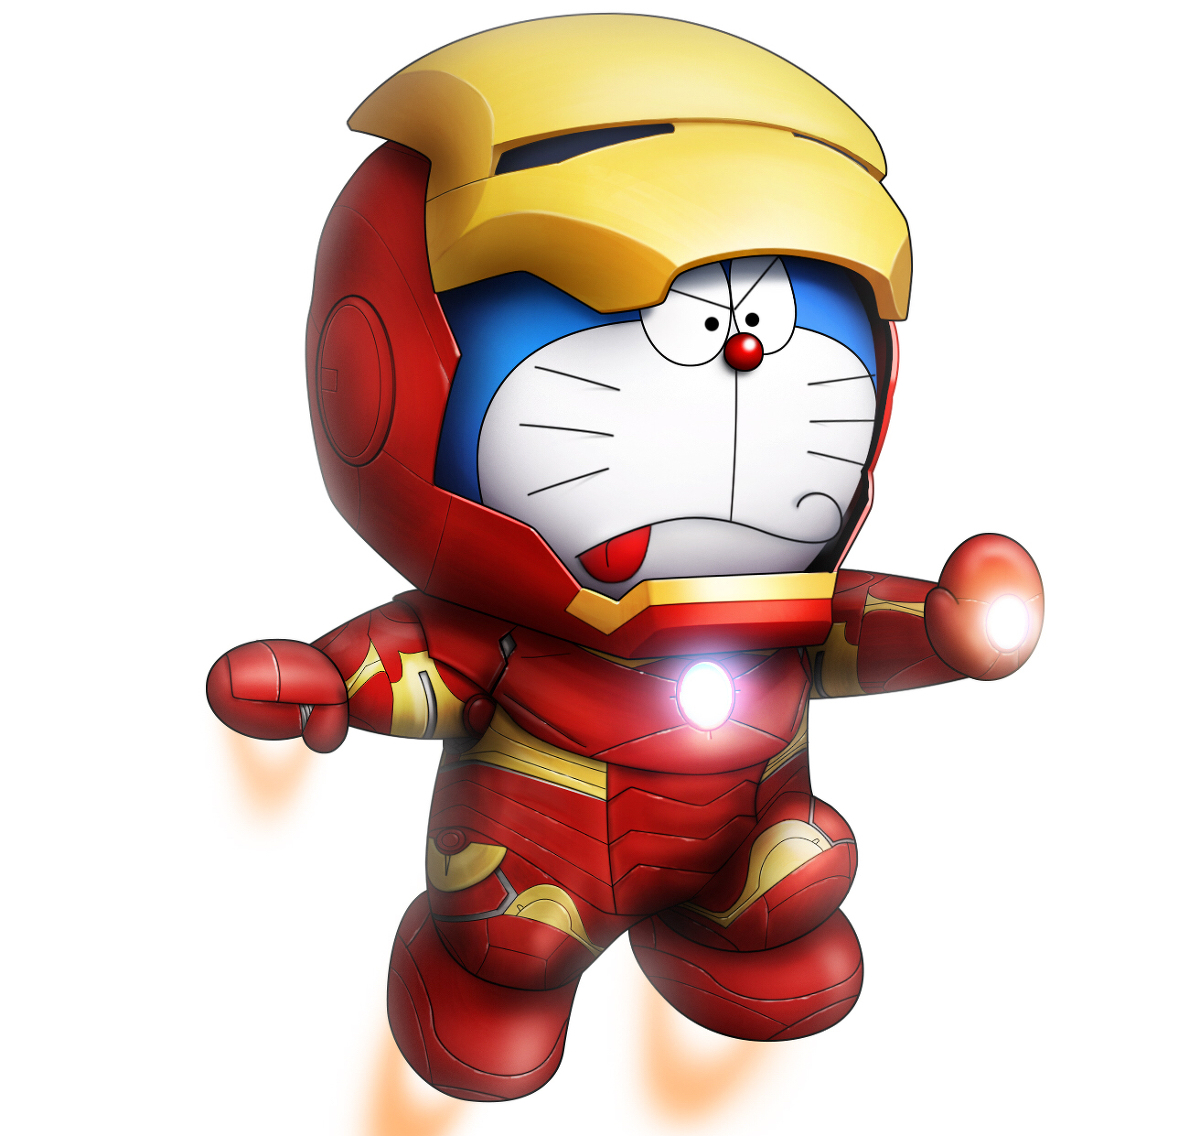 Mèo máy Doraemon, nhân vật đại diện cho tuổi thơ của nhiều thế hệ. Hãy điểm qua những hình ảnh mèo máy Doraemon đầy sống động và ngộ nghĩnh này. Bạn sẽ phải bất ngờ bởi khả năng phát minh tuyệt vời của Doraemon trong từng tập phim.